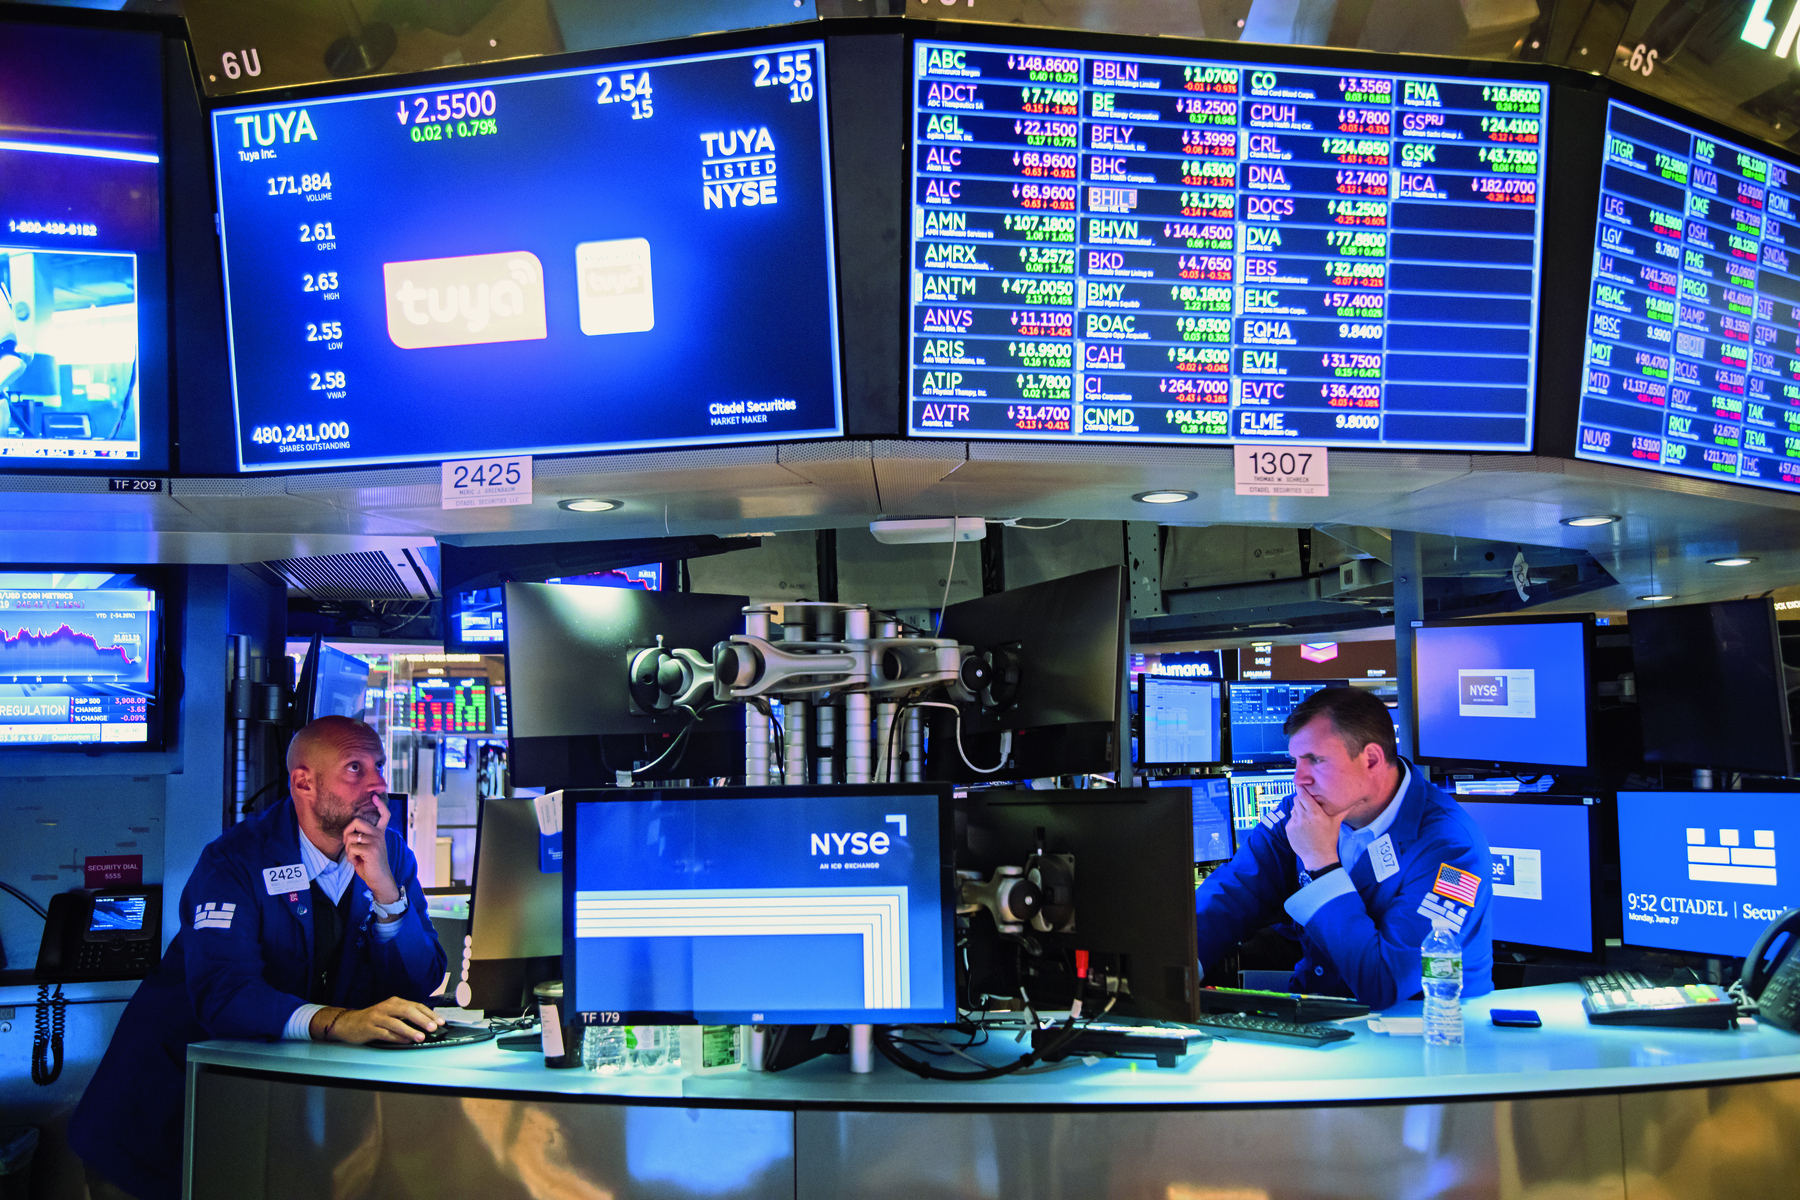 Fotografia. Dois homens sentados em cadeiras de encosto alto. Estão olhando para diversos monitores com informações financeiras. Os dois homens estão com uma mão na boca e a outra no mouse do computador. Ambos usam roupas azuis.